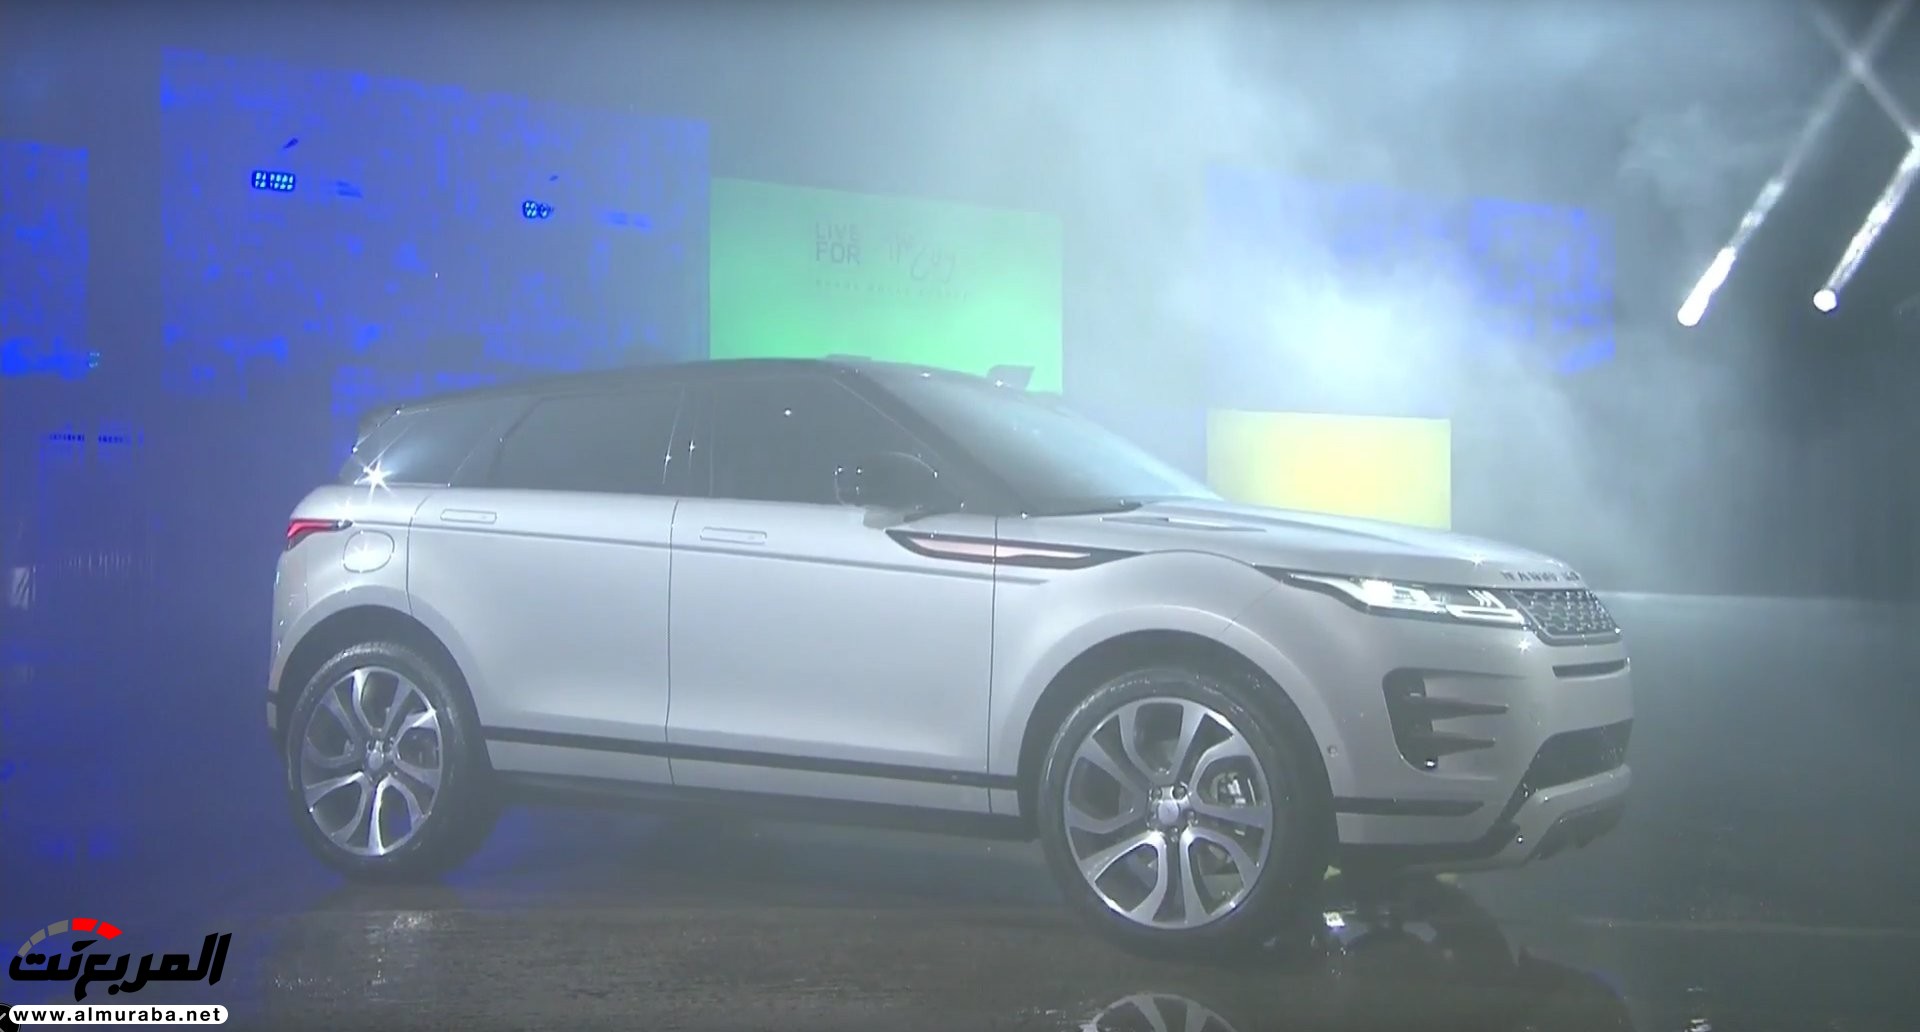 اهم 7 معلومات عن رنج روفر ايفوك 2020 الجديدة كلياً Range Rover Evoque 1